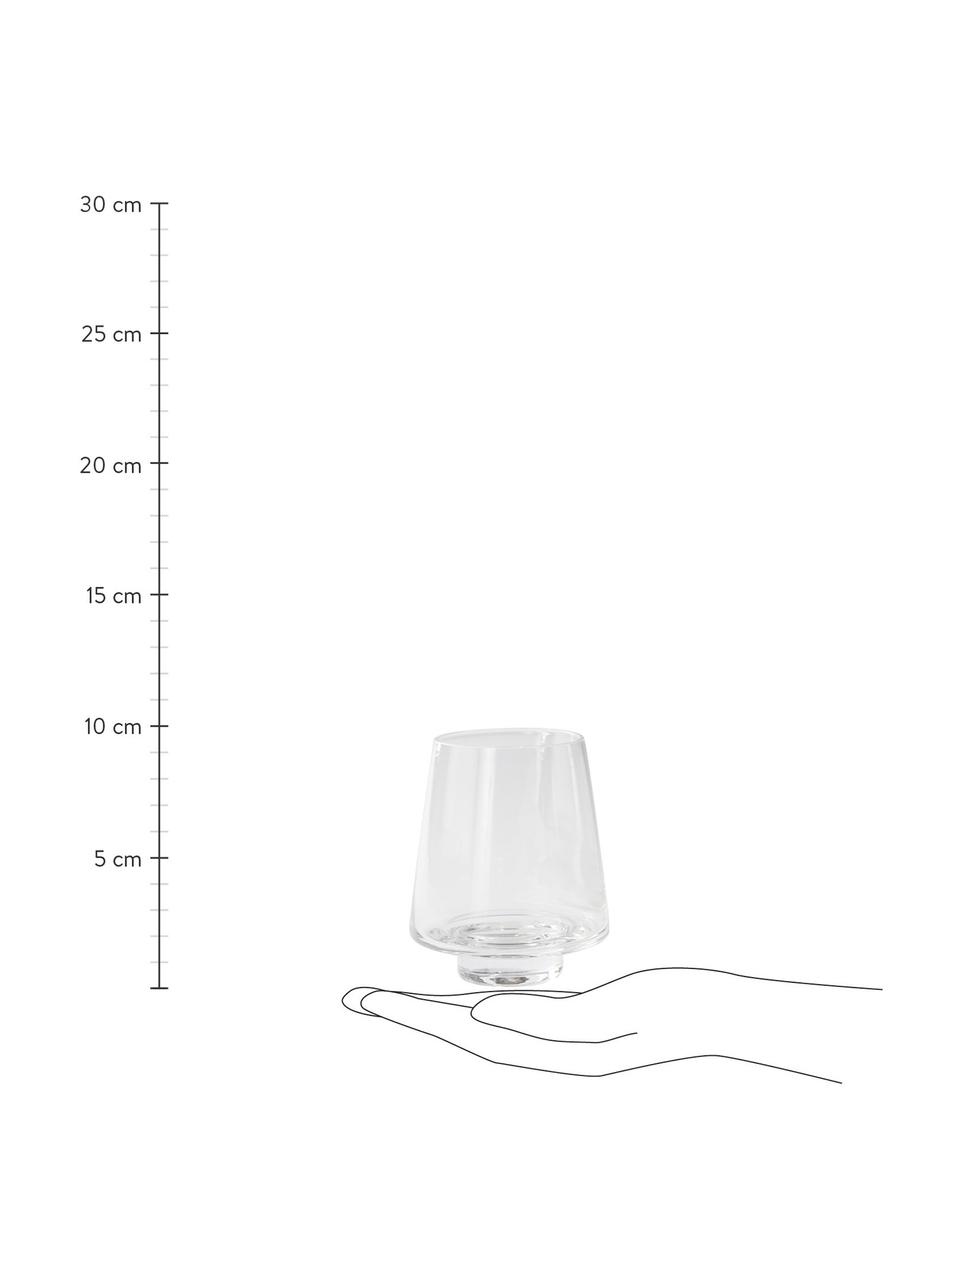 Bicchiere acqua trasparente Kai 4 pz, Vetro, Trasparente, Ø 7 x Alt. 10 cm, 300 ml